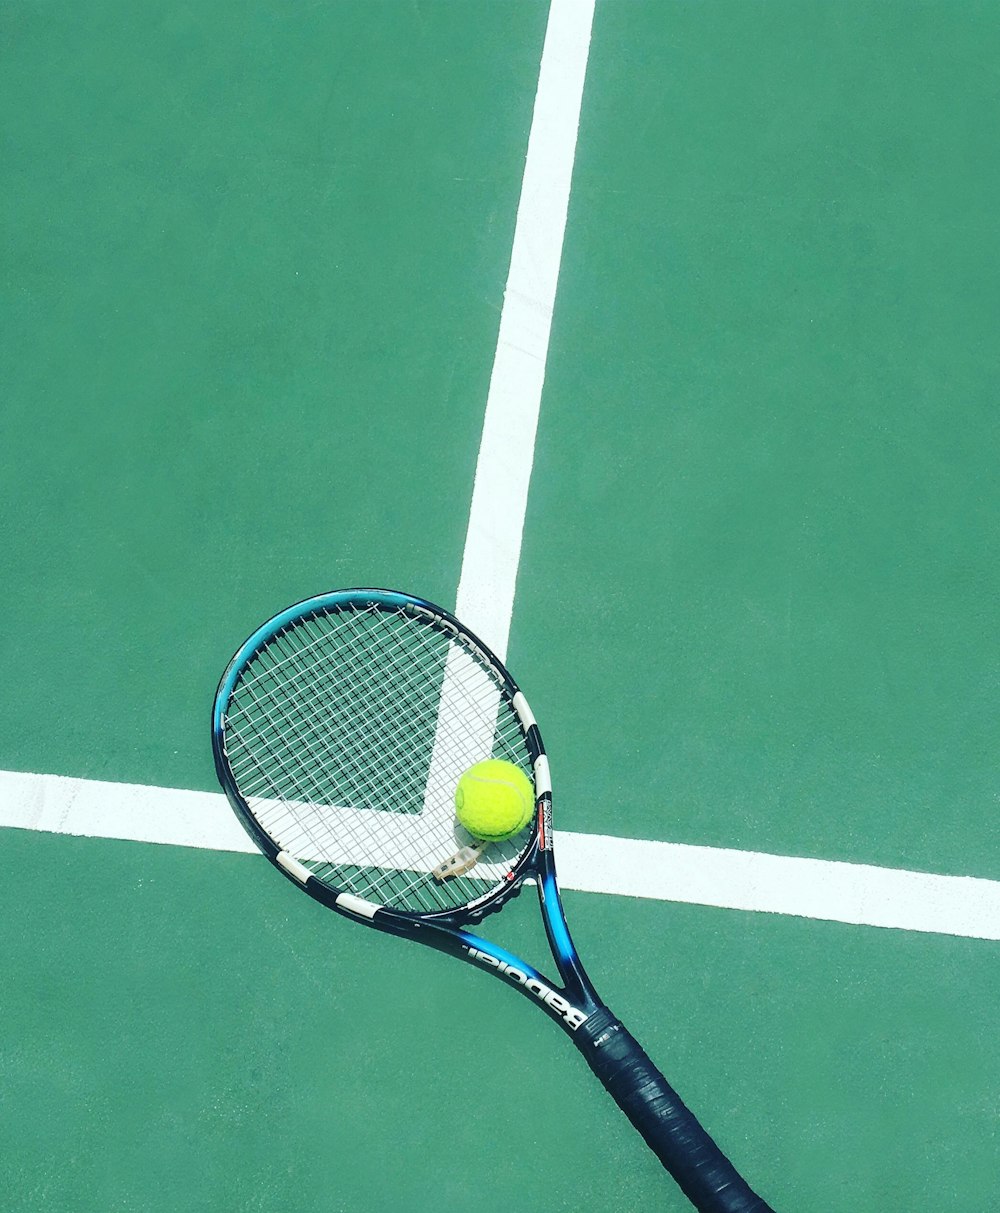 Más de 100 imágenes de tenis | Descargar imágenes gratis en Unsplash